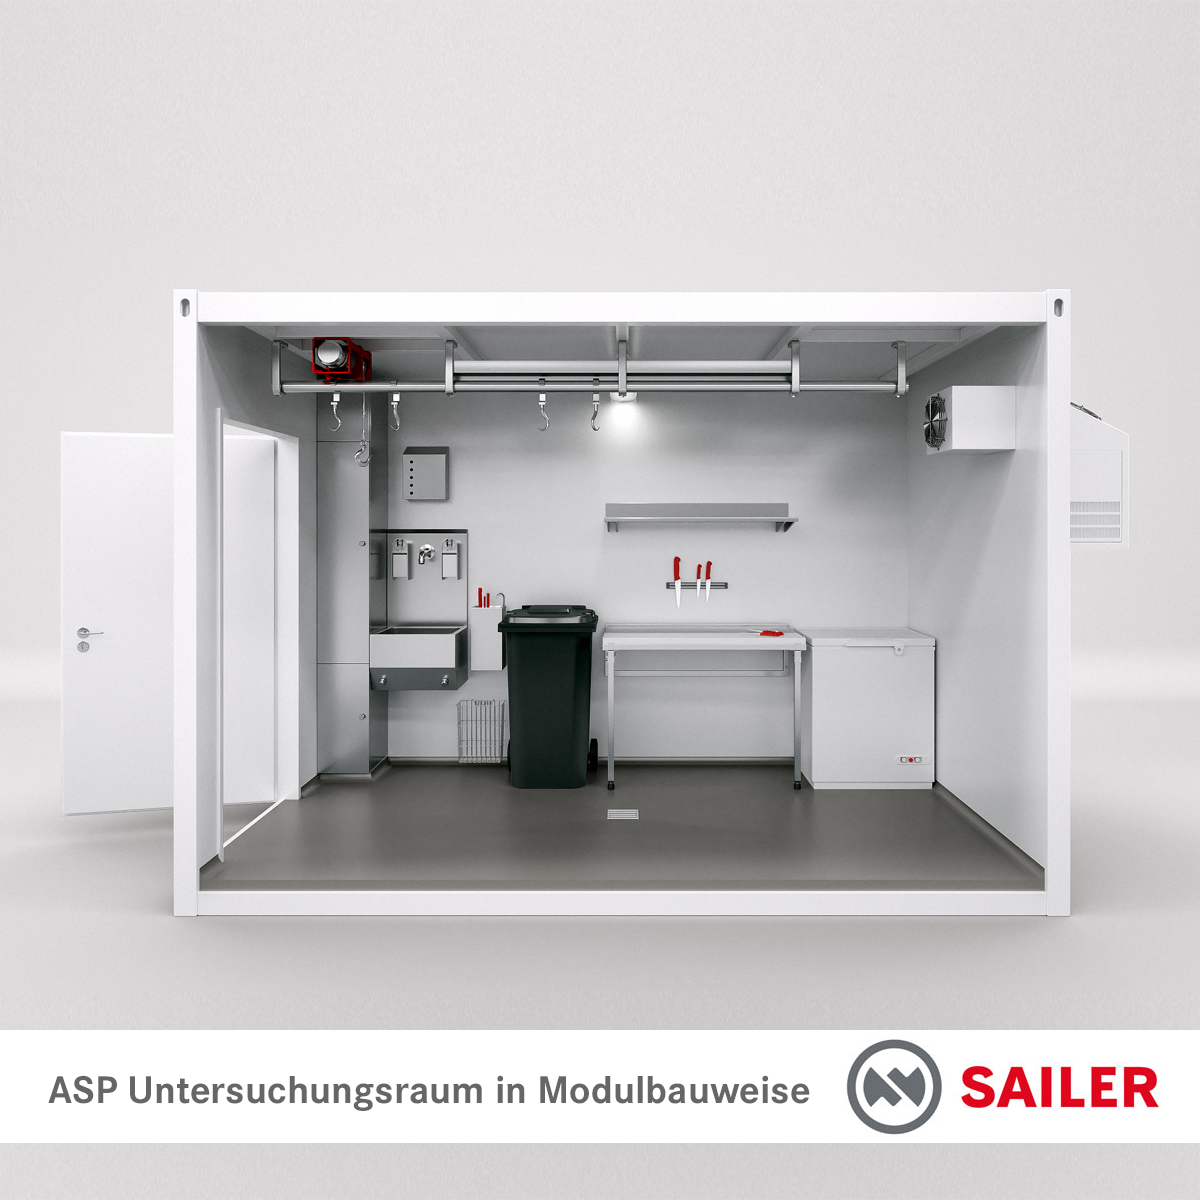 ASP Untersuchungsraum in Modulbauweise / Container